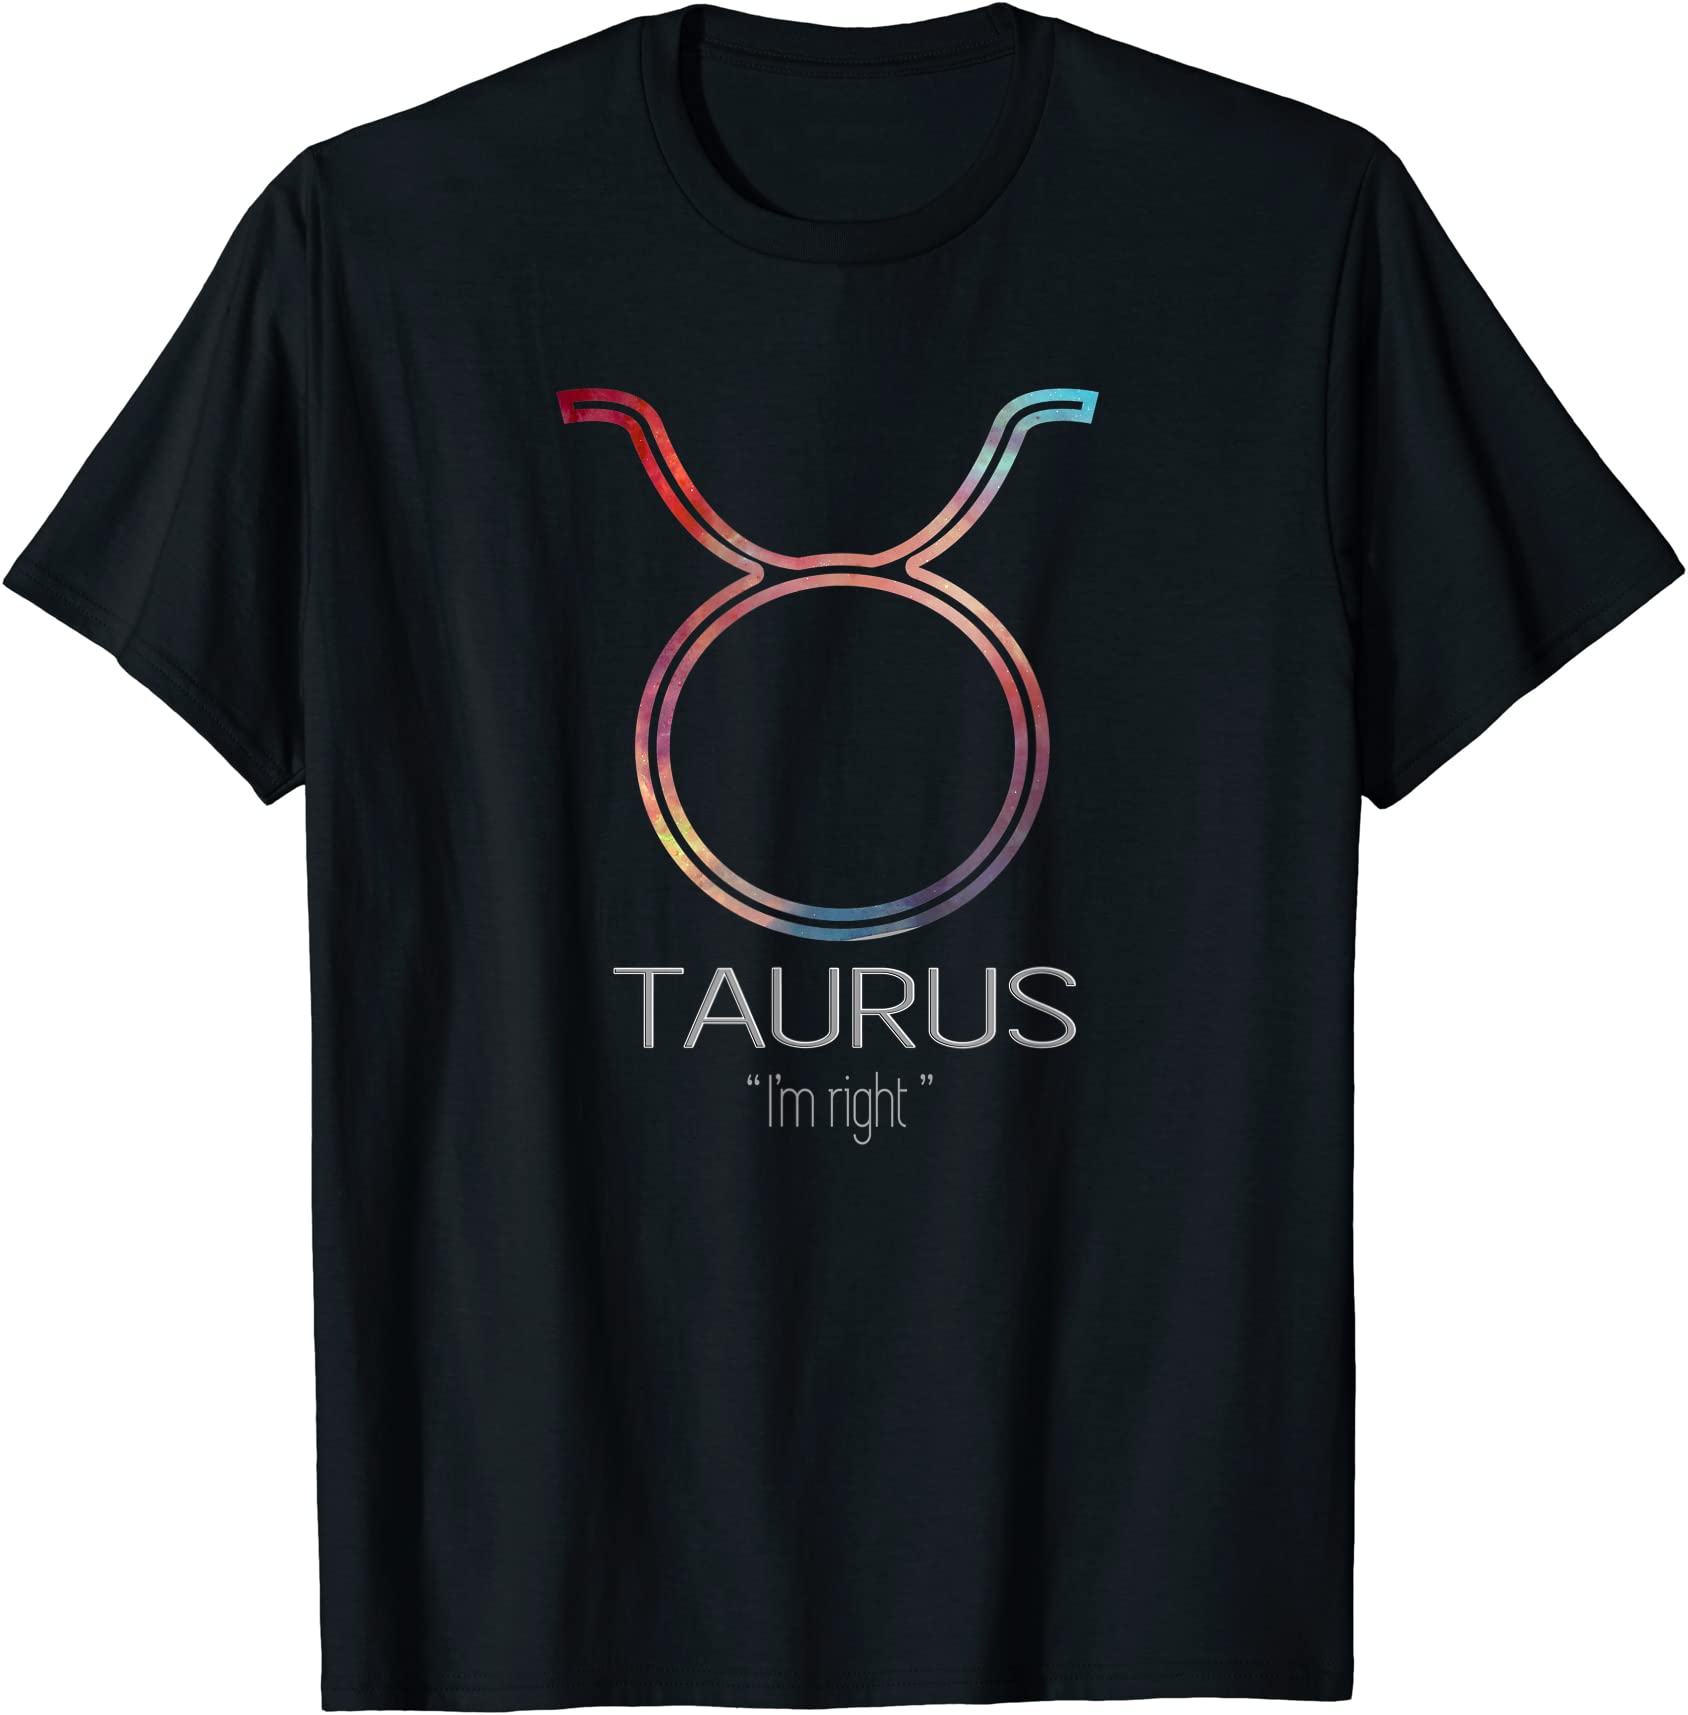 taurus shirts for men zodiac sign t shirts men - Buy t-shirt designs